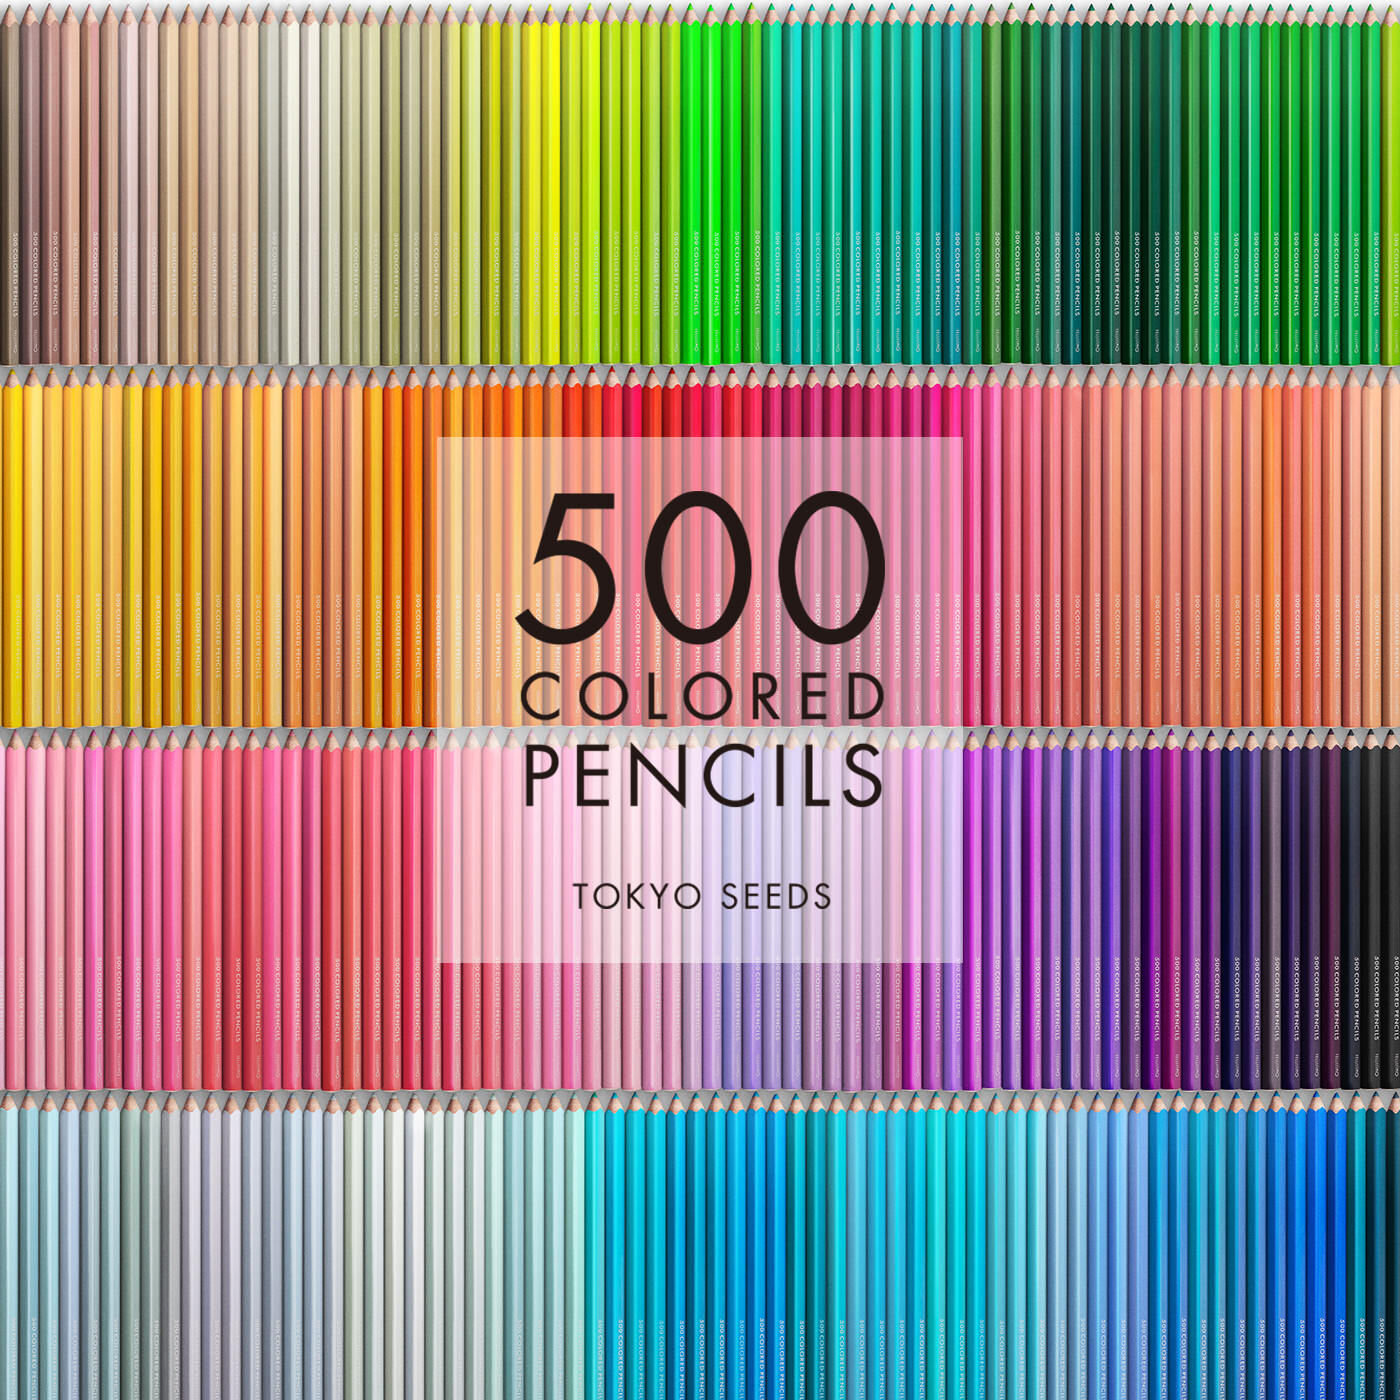 Real Stock|【402/500 MOUSSE WHIP】500色の色えんぴつ TOKYO SEEDS|1992年、世界初の「500色」という膨大な色数の色えんぴつが誕生して以来、その販売数は発売当初から合わせると、世界55ヵ国10万セット以上。今回、メイド・イン・ジャパンにこだわり、すべてが新しく生まれ変わって登場しました。